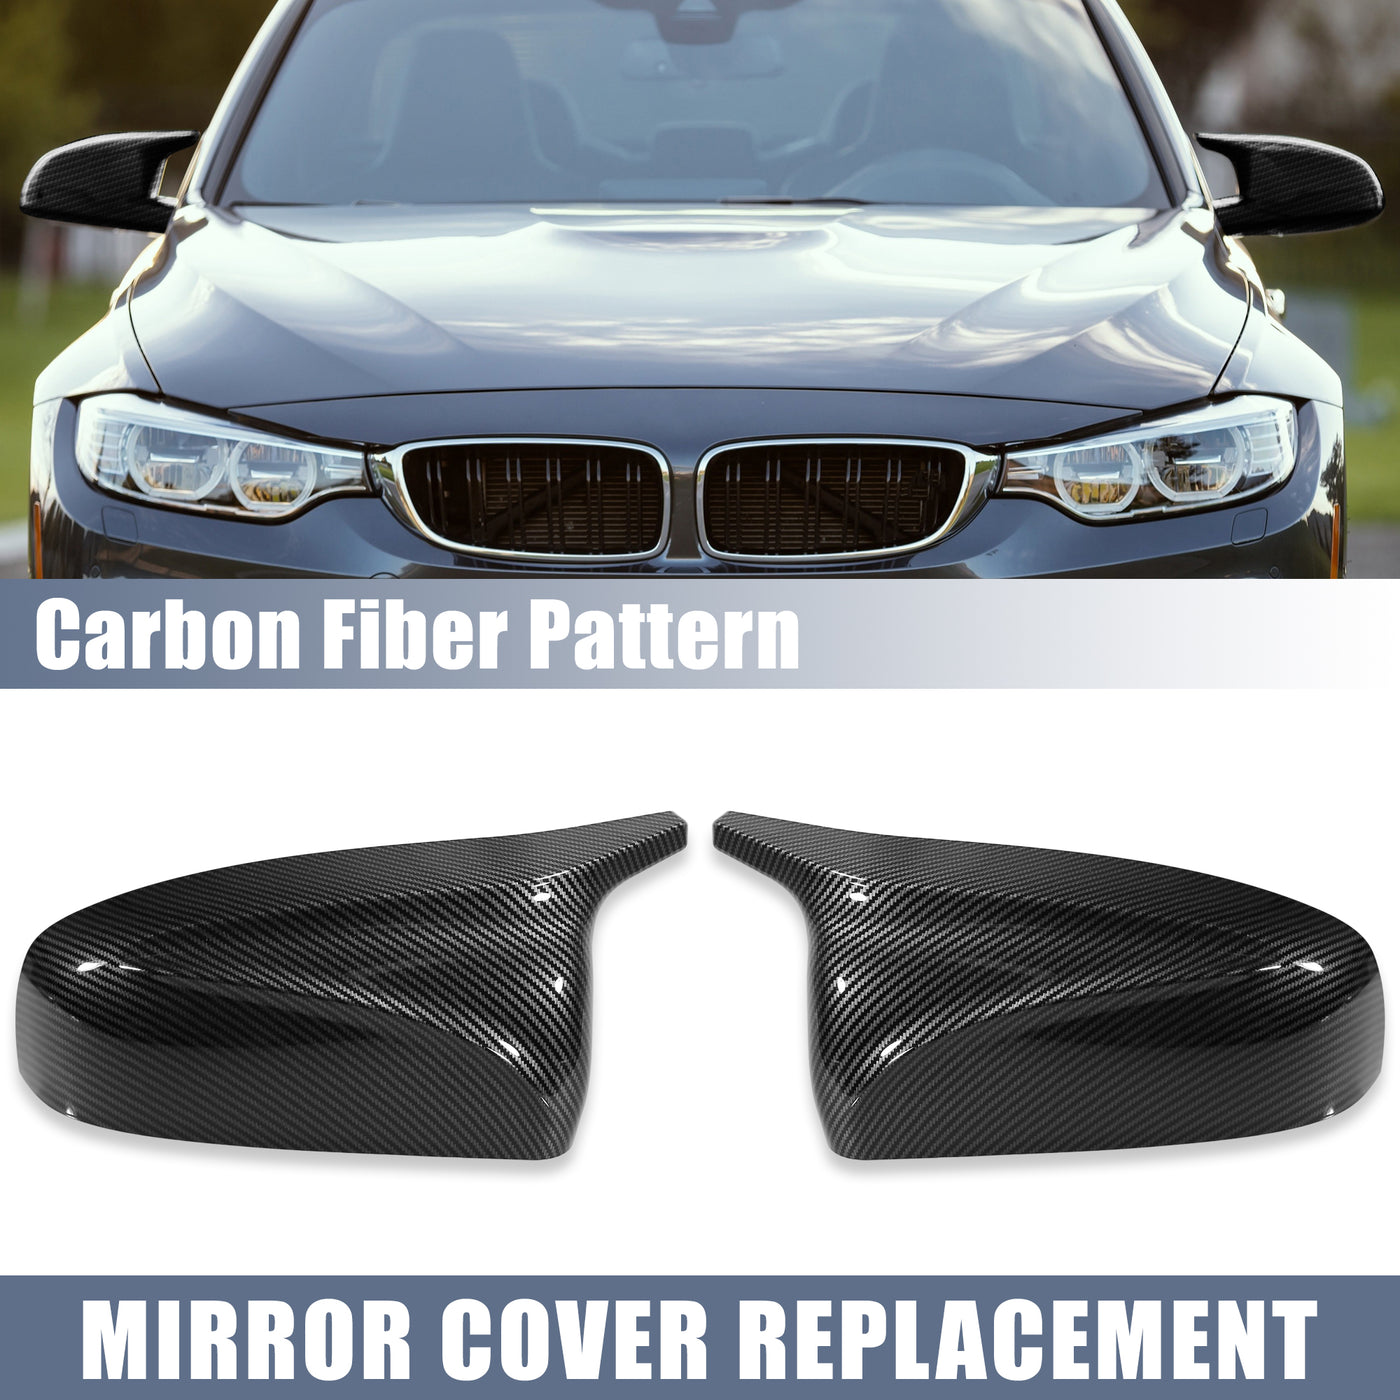 X AUTOHAUX Pair Car Exterior Rear View Mirror Covers Cap Replacement for BMW X5 E70 X6 E71 E72 2006-2014 Carbon Fiber Pattern